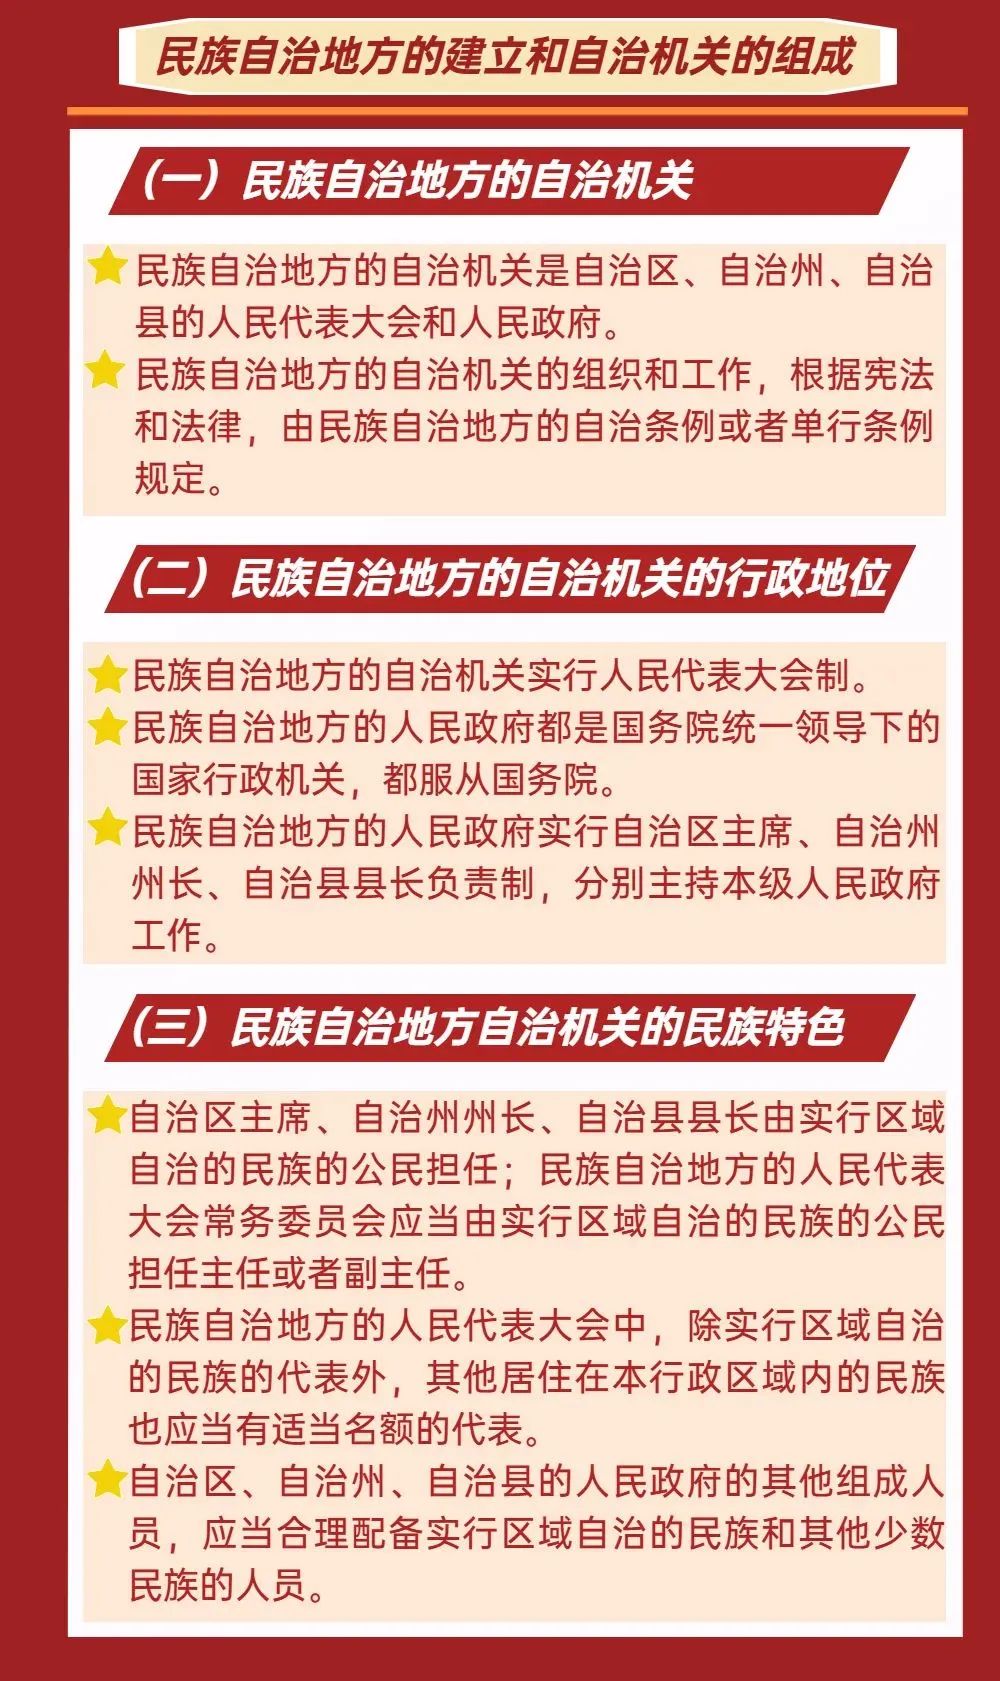 党的民族理论政策和民族法律法规学习专栏一图速览中华人民共和国民族